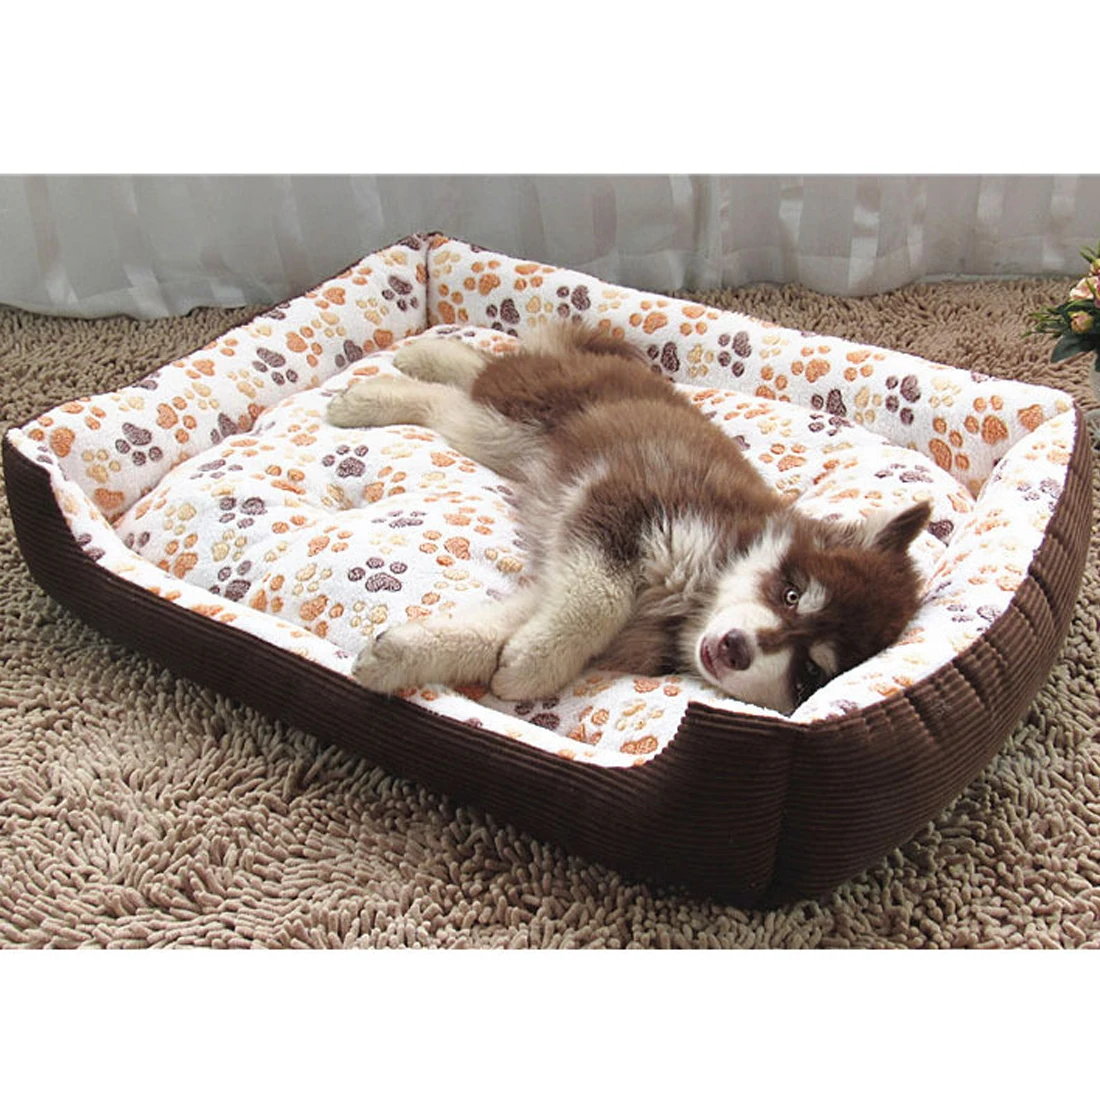 Кровать для собаки кошки вельветовый мягкий Водонепроницаемый моющийся домашний коврик для питомца мягкий диван будка для собак кошек домашние собачьи кровати для больших собак